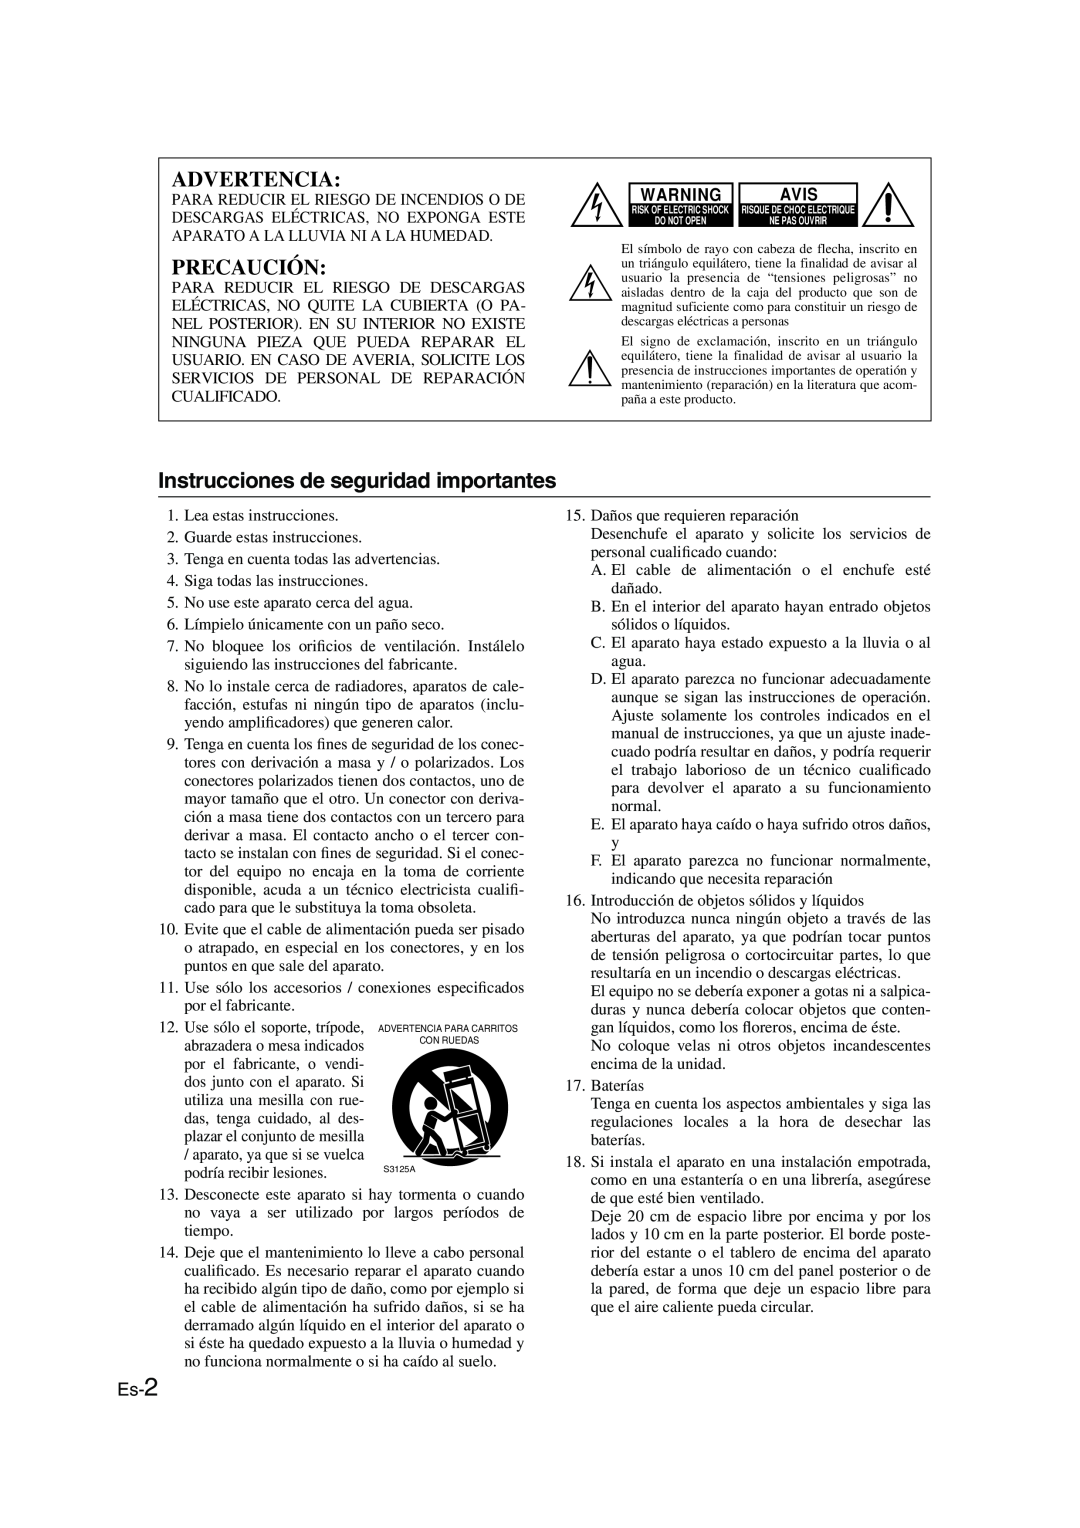 Onkyo CBX-300 instruction manual Advertencia, Precaución, Instrucciones de seguridad importantes, Es-2, Avis 